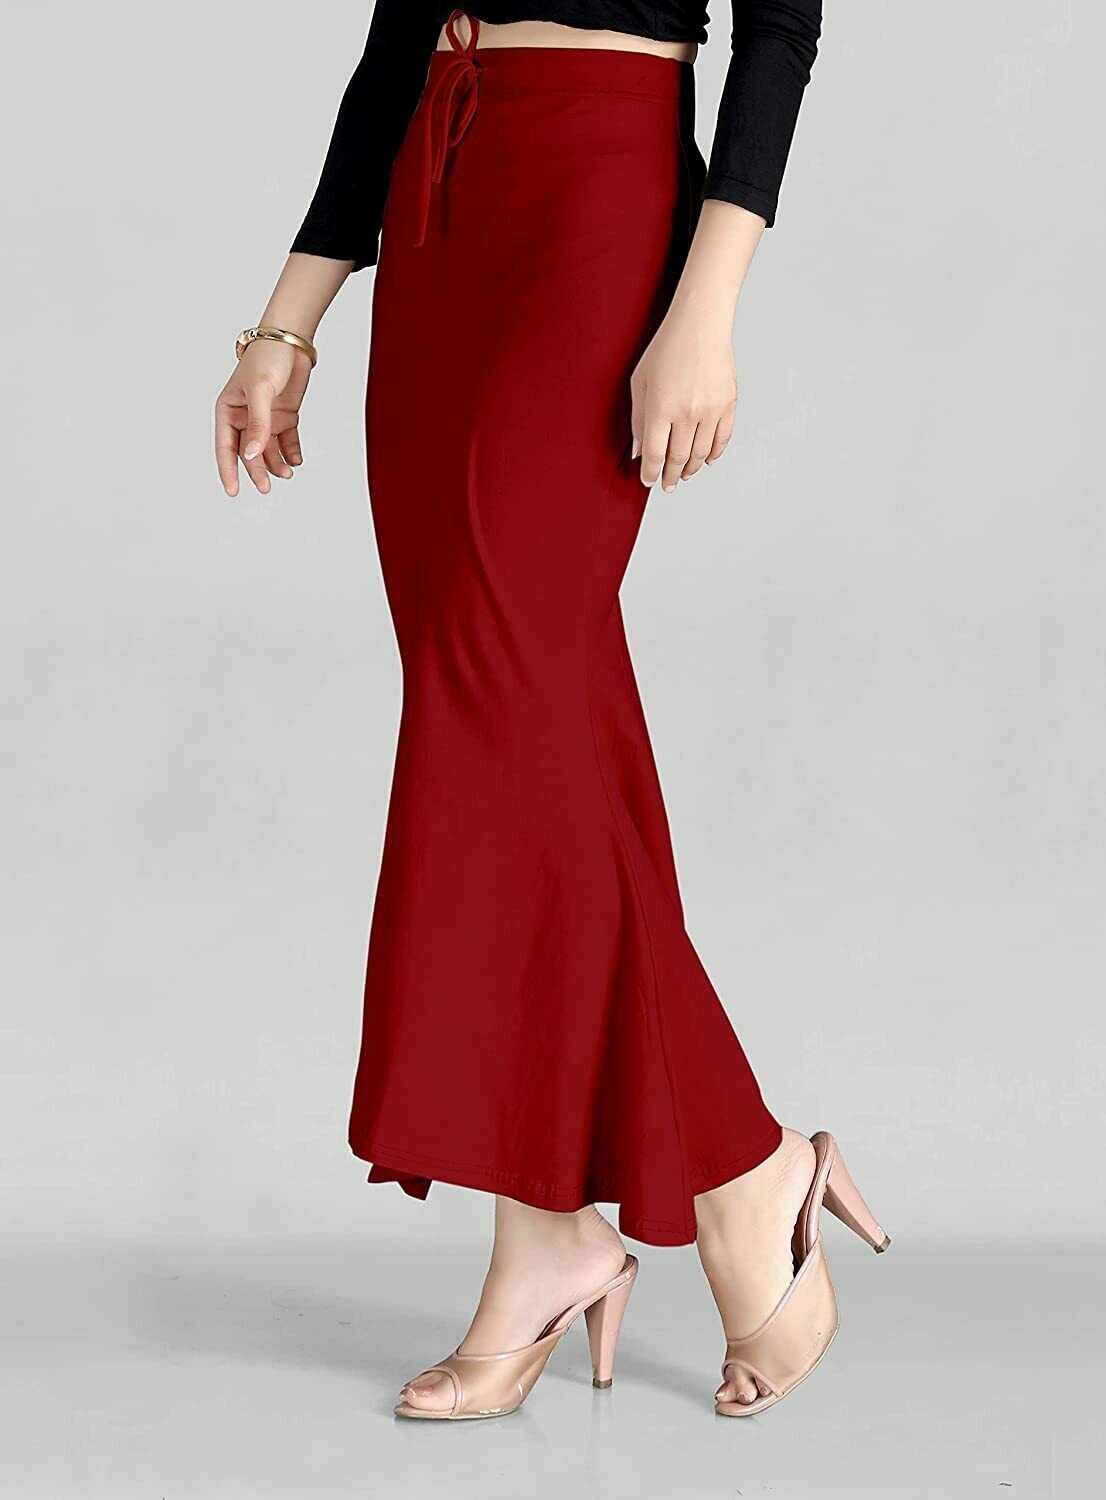 Buy Red Rose - Saree Shaper for Women - Petticoat - Sari Shaper (Skin 2XL)  at